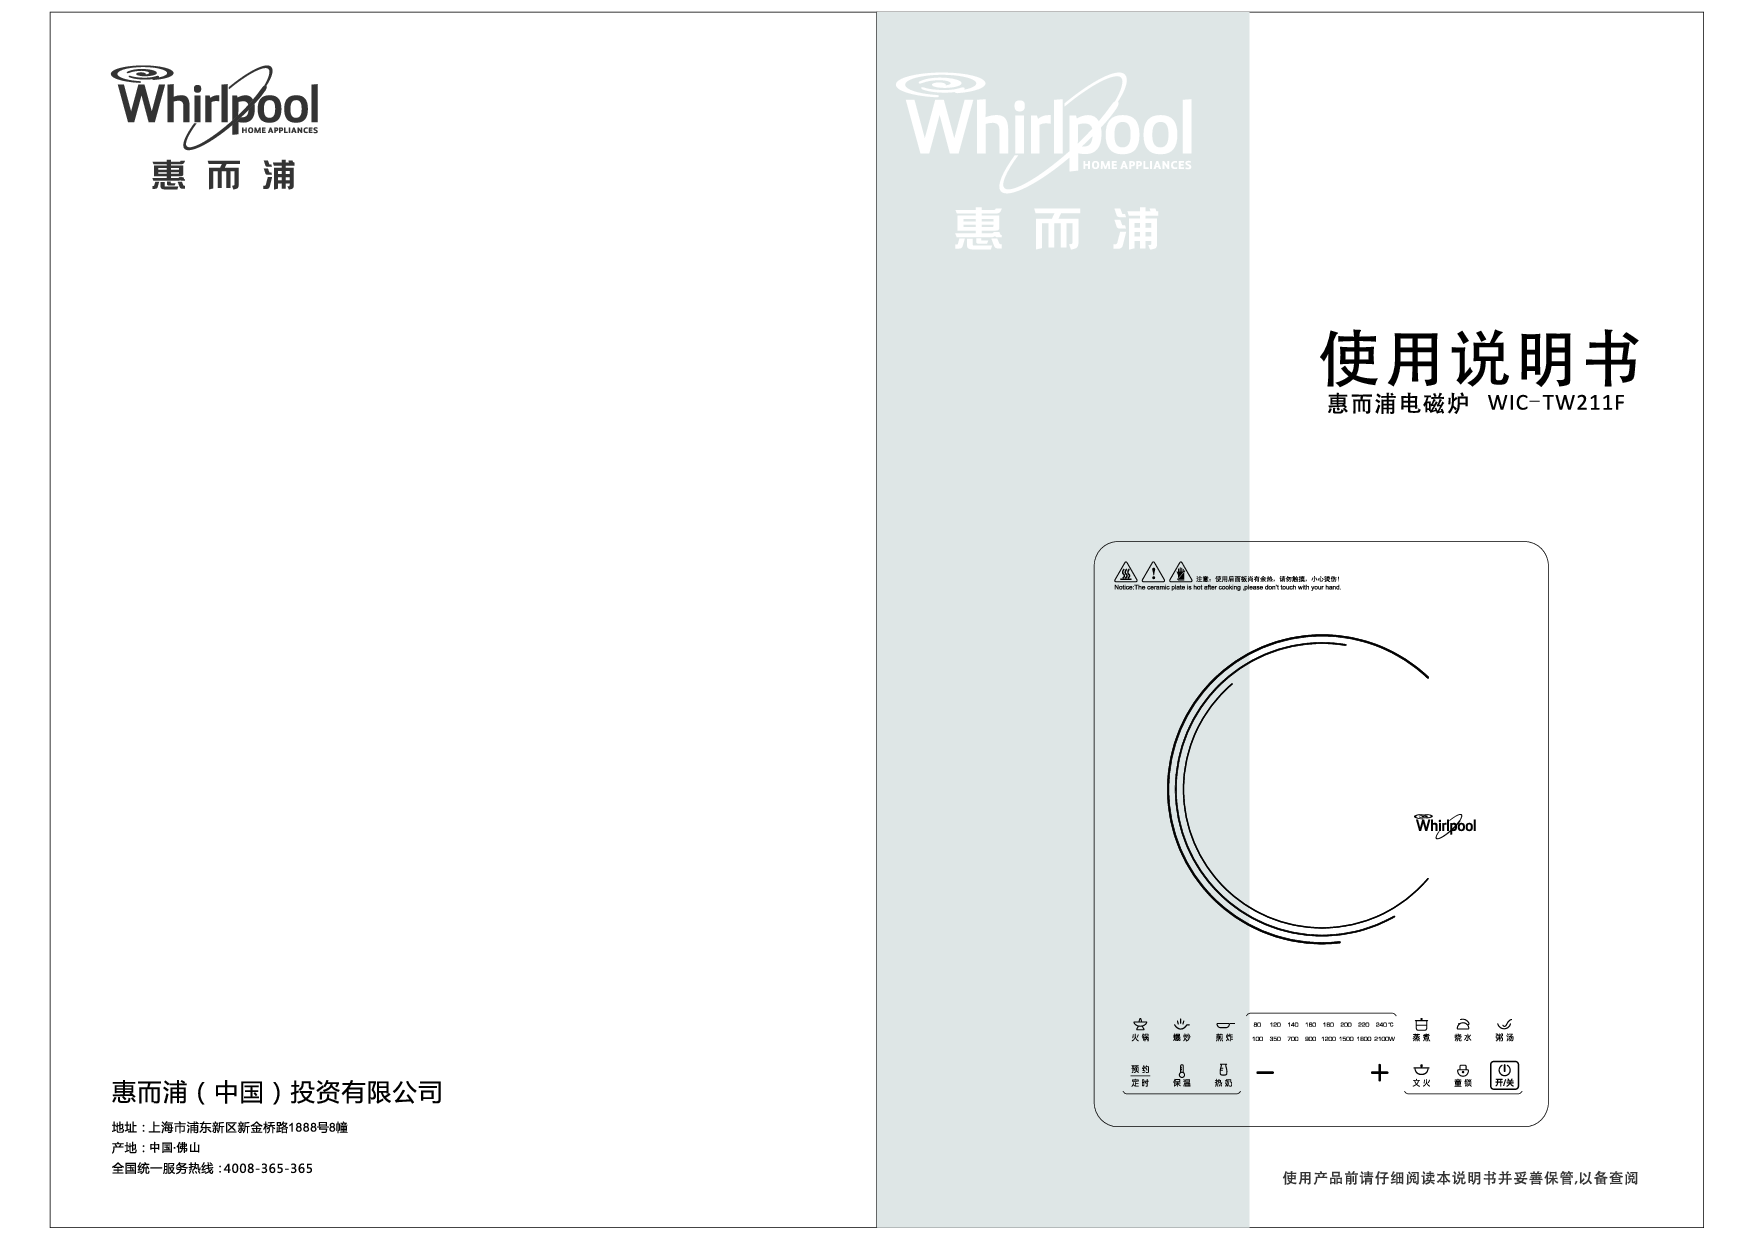 惠而浦 Whirlpool WIC-TW211F 使用说明书 封面